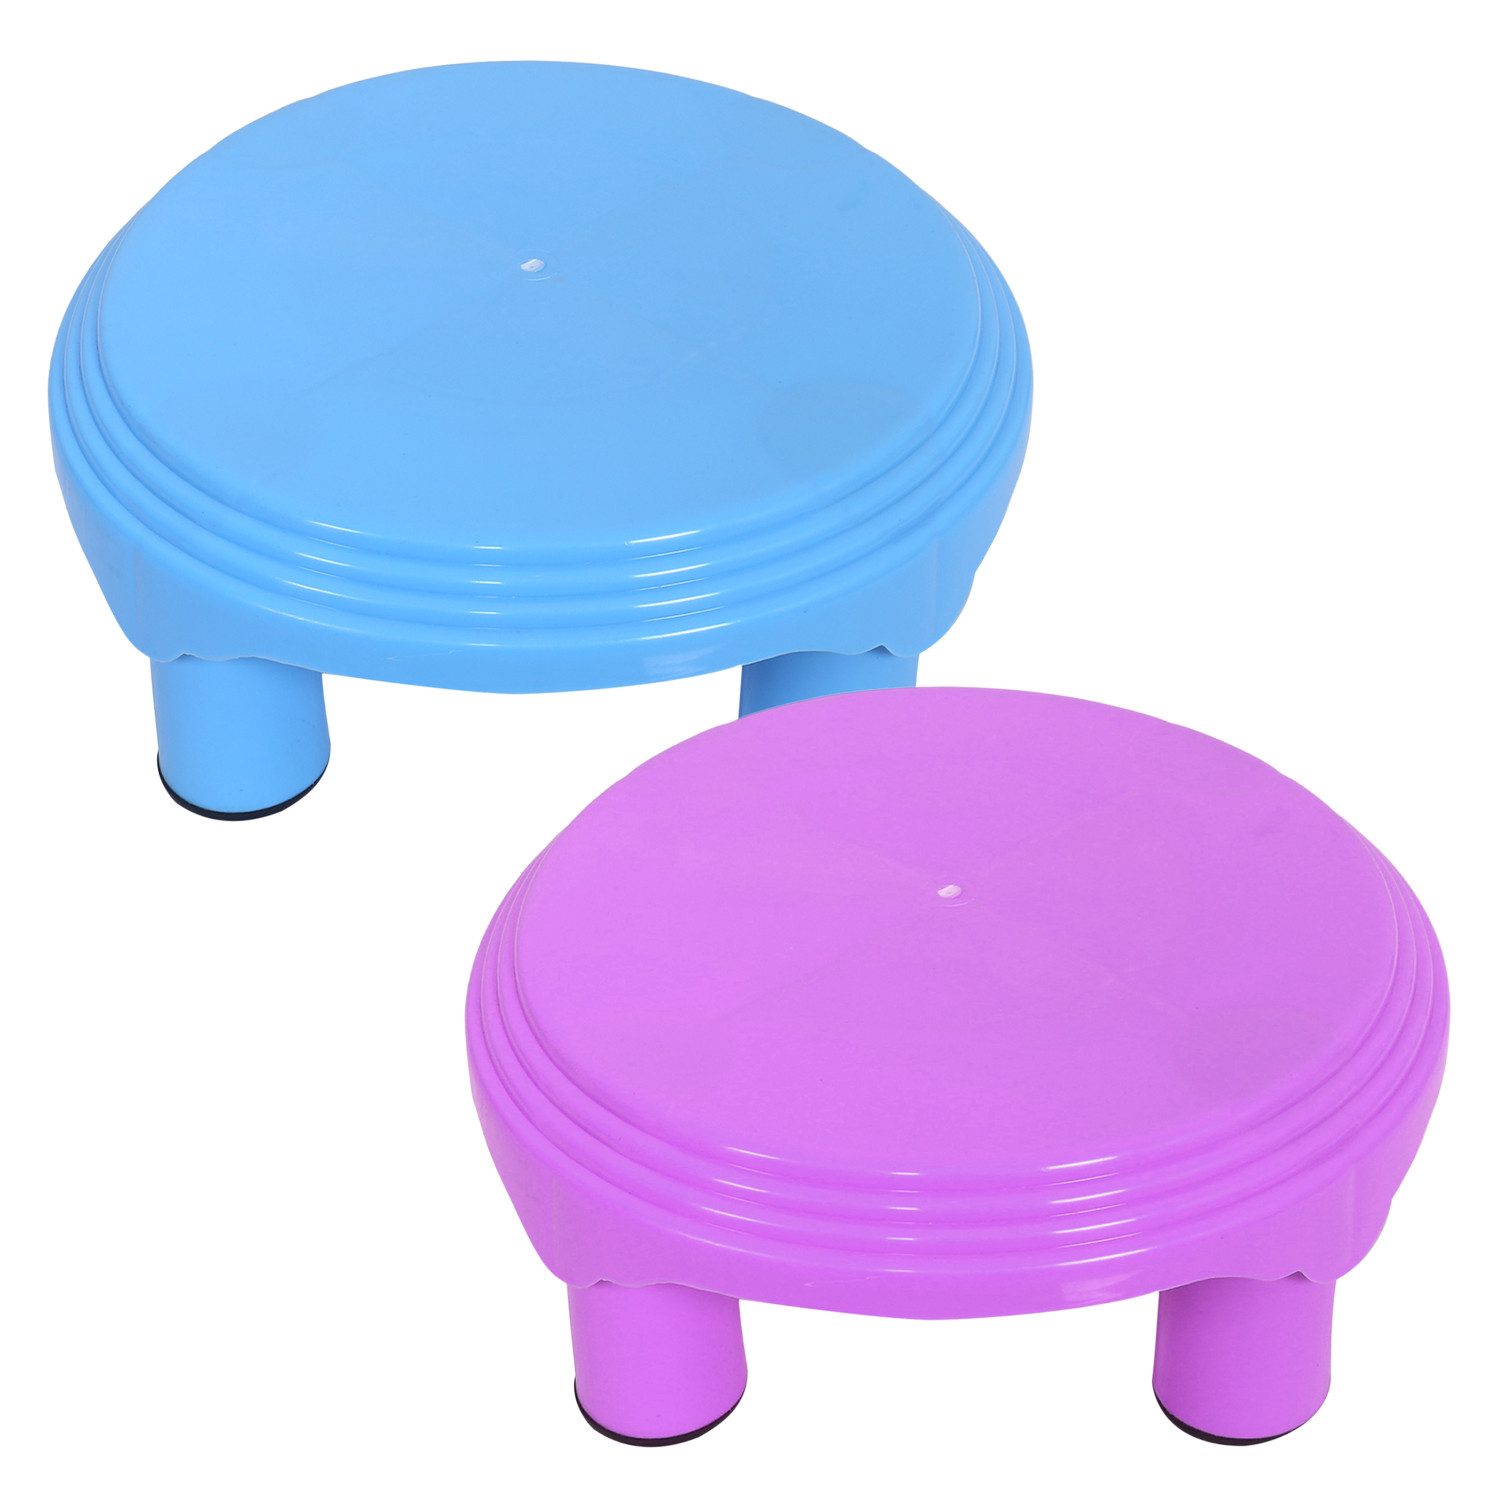 Kuber Industries Bathroom Stool|Plastic Stool|Anti-slip Bathing Stool|Stool for Senior Citizen|Patla for Bathroom|Pack of 2 (Sky Blue & Pink)